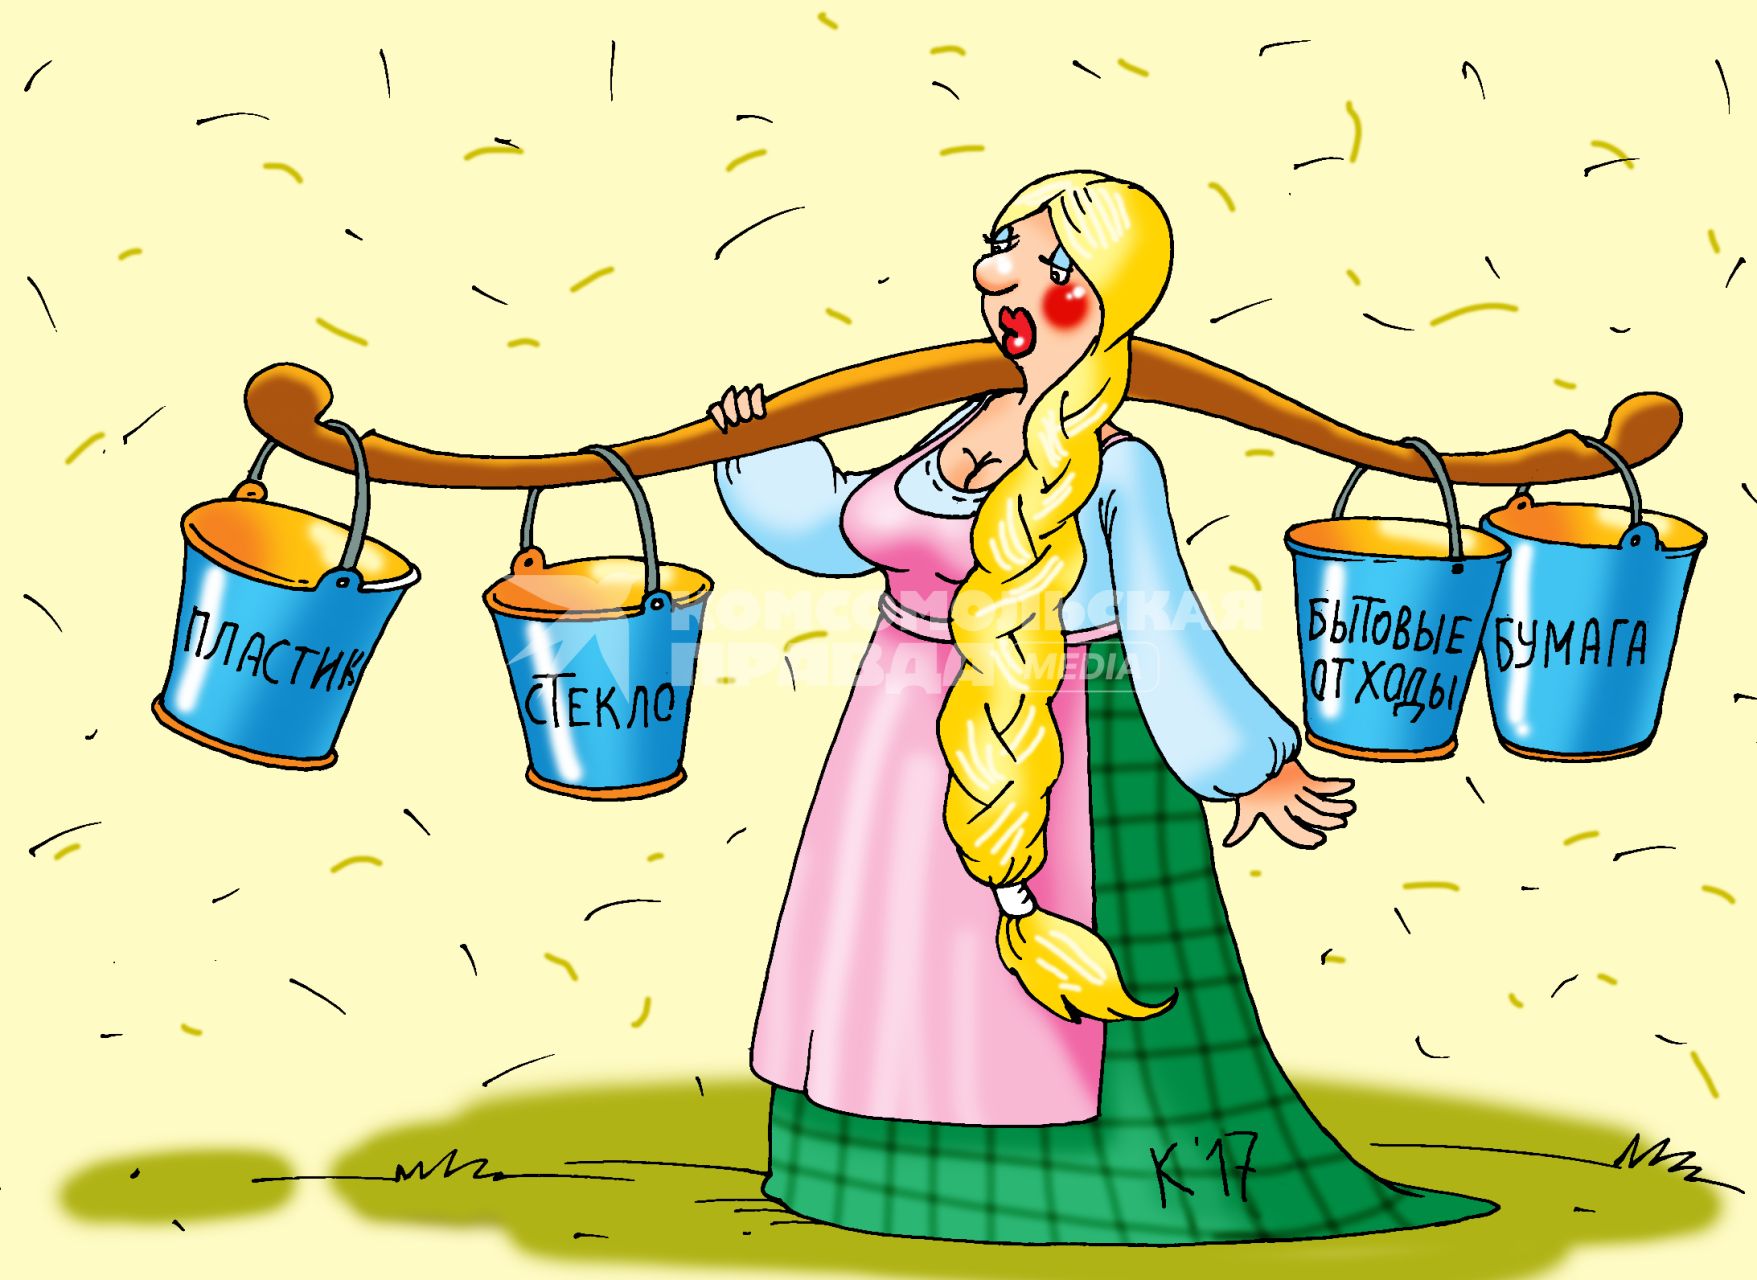 Карикатура на тему раздельного сбора мусора.